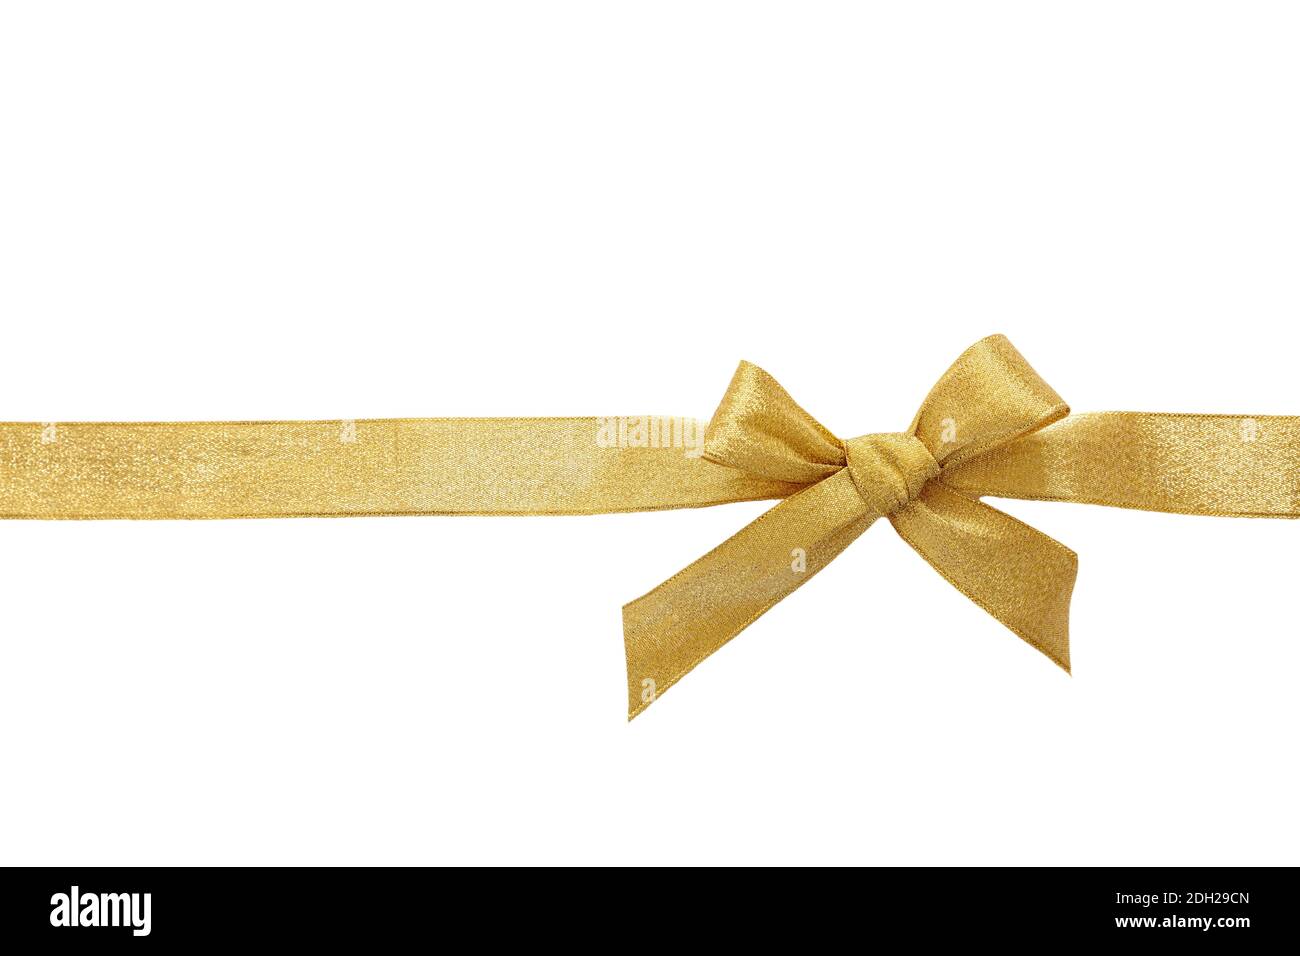 Noeud doré avec ruban découpé isolé sur fond blanc, Noël doré décoratif, jour de la Saint-Valentin, cadeau d'anniversaire concept. Banque D'Images